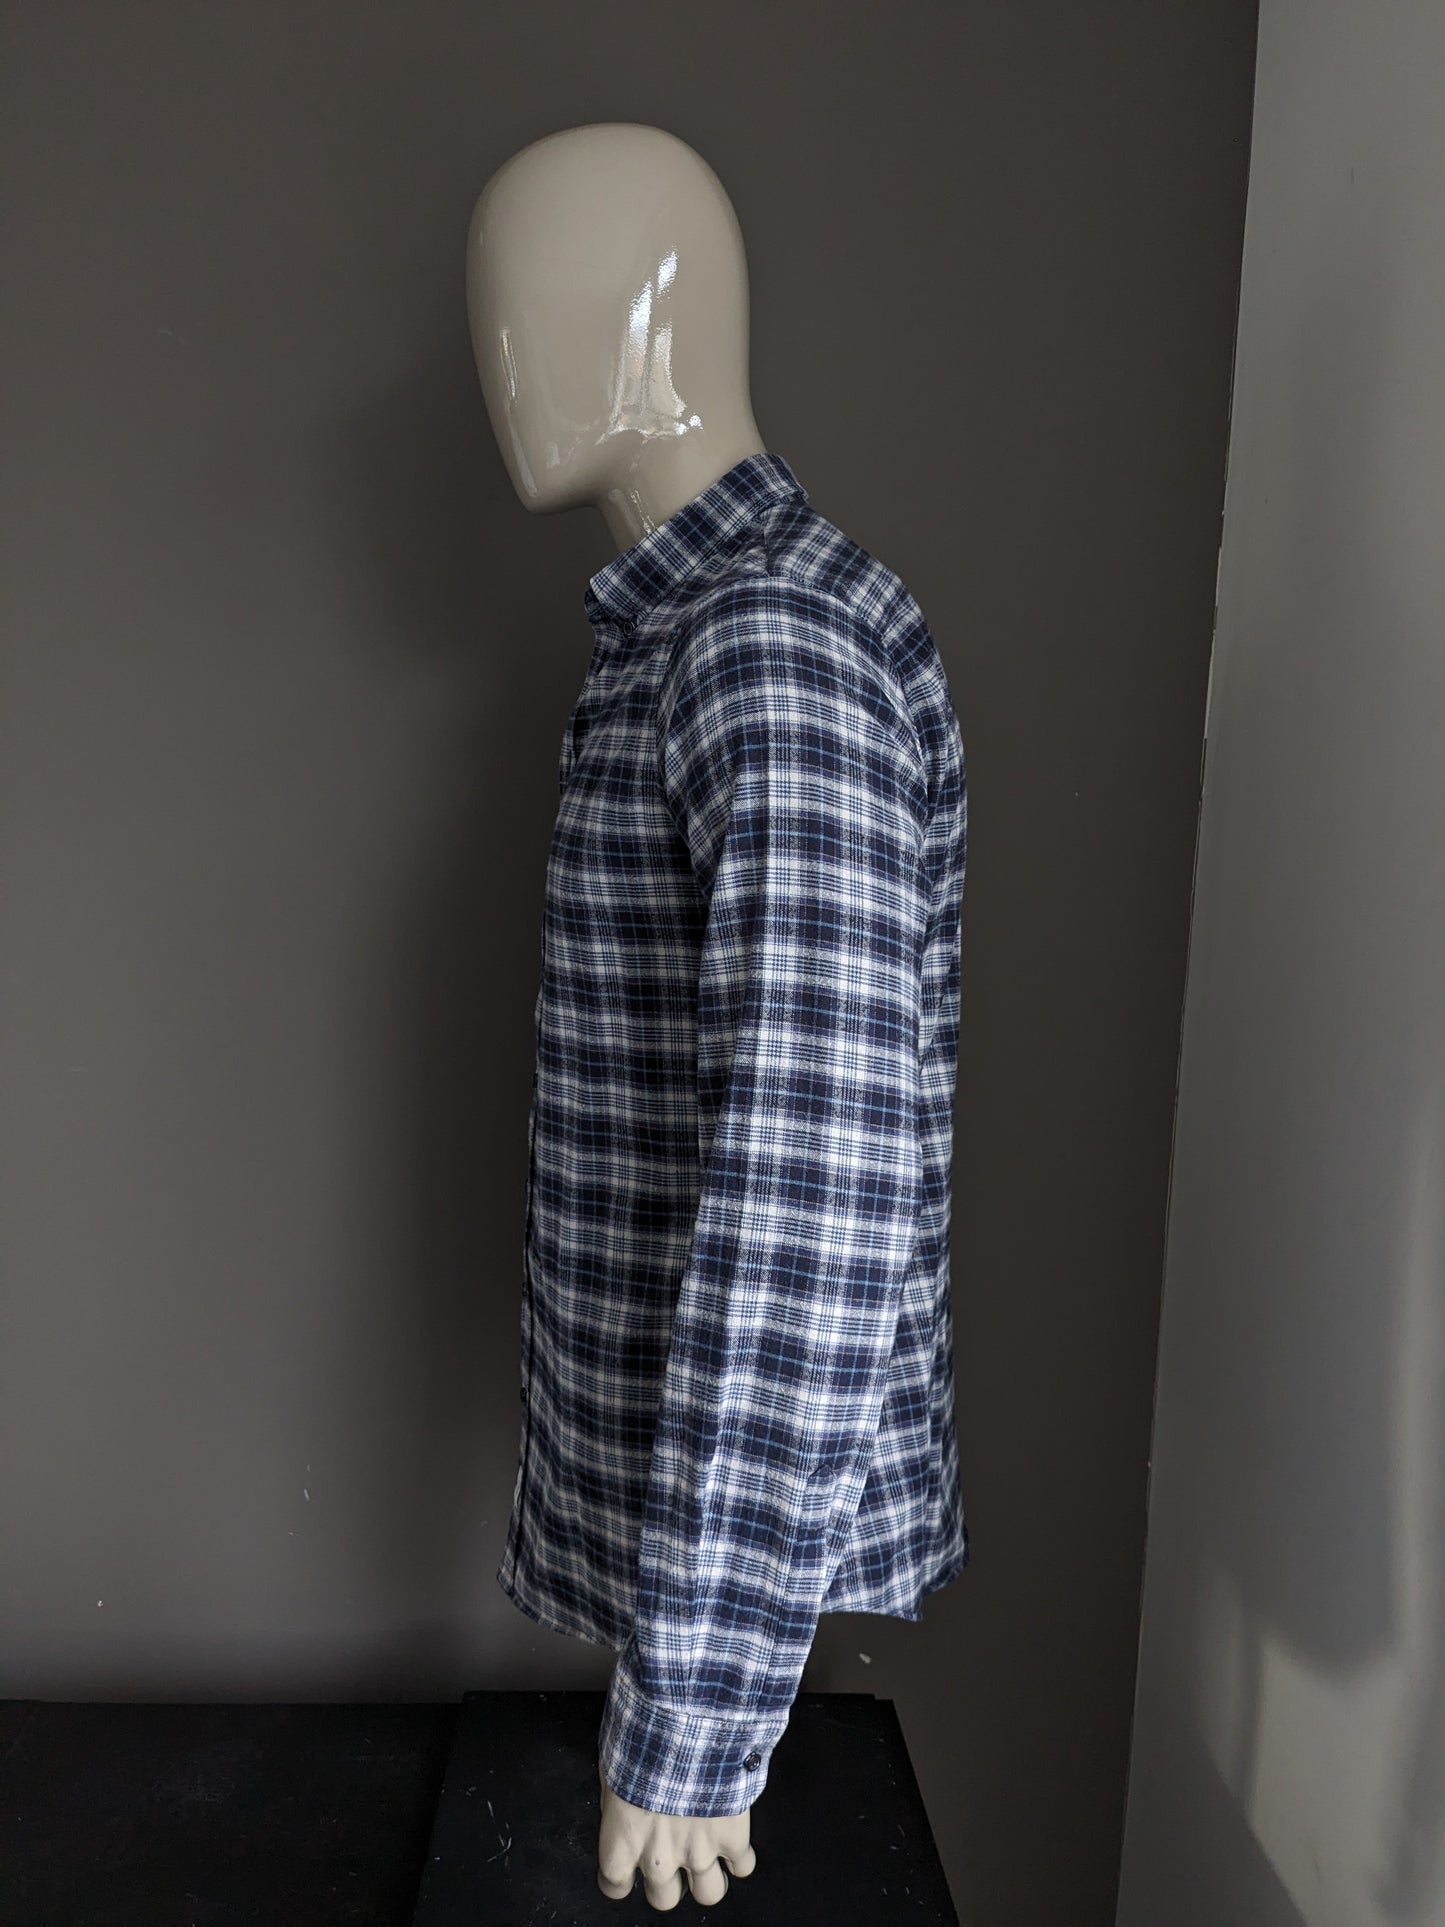 Camicia di flanella dsquared2. Checker blu beige. Taglia 54 / L.